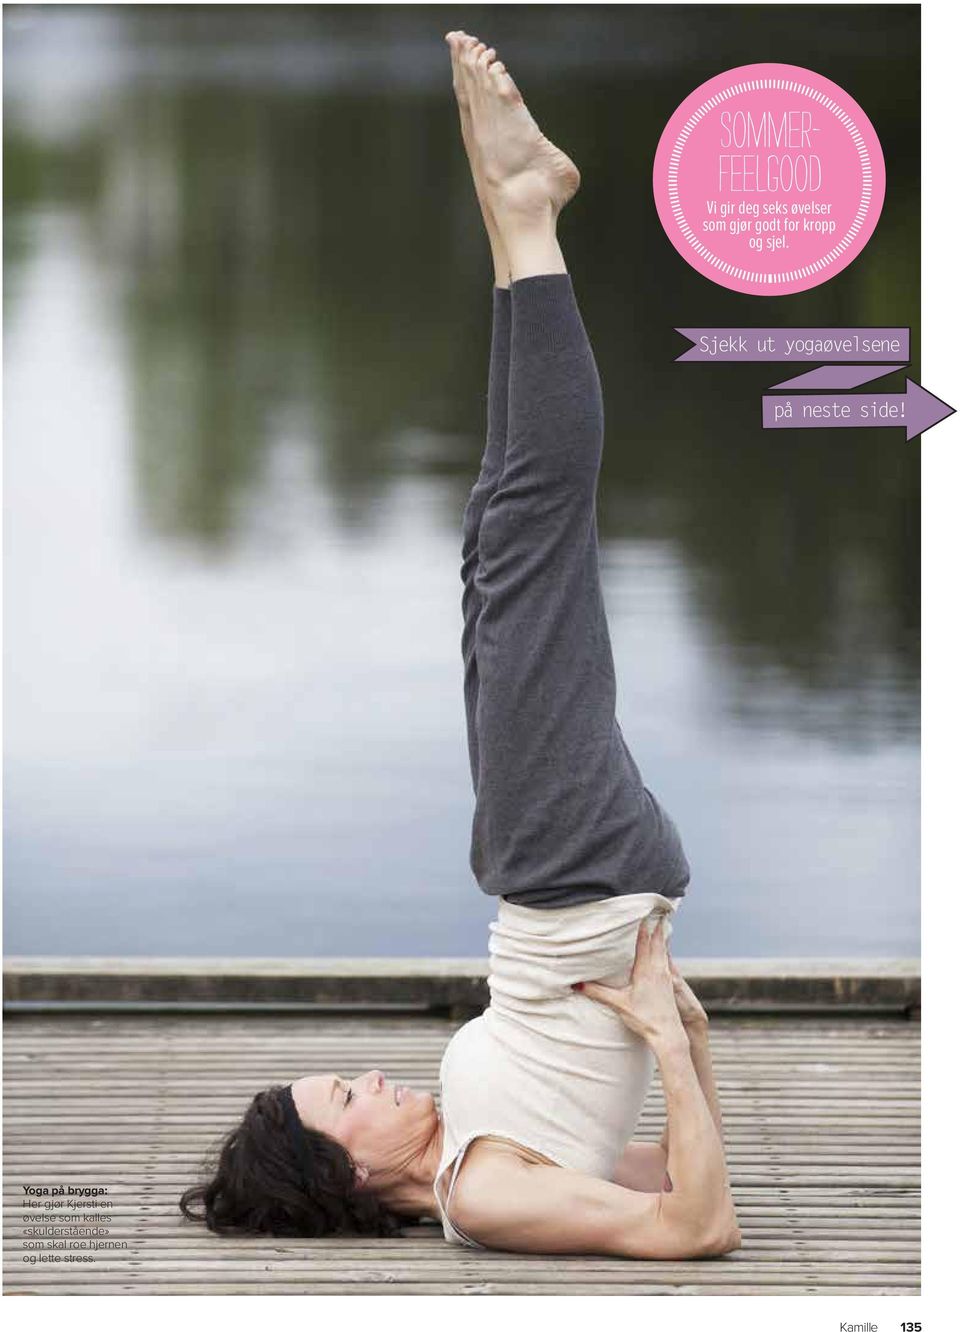 Yoga på brygga: Her gjør Kjersti en øvelse som kalles